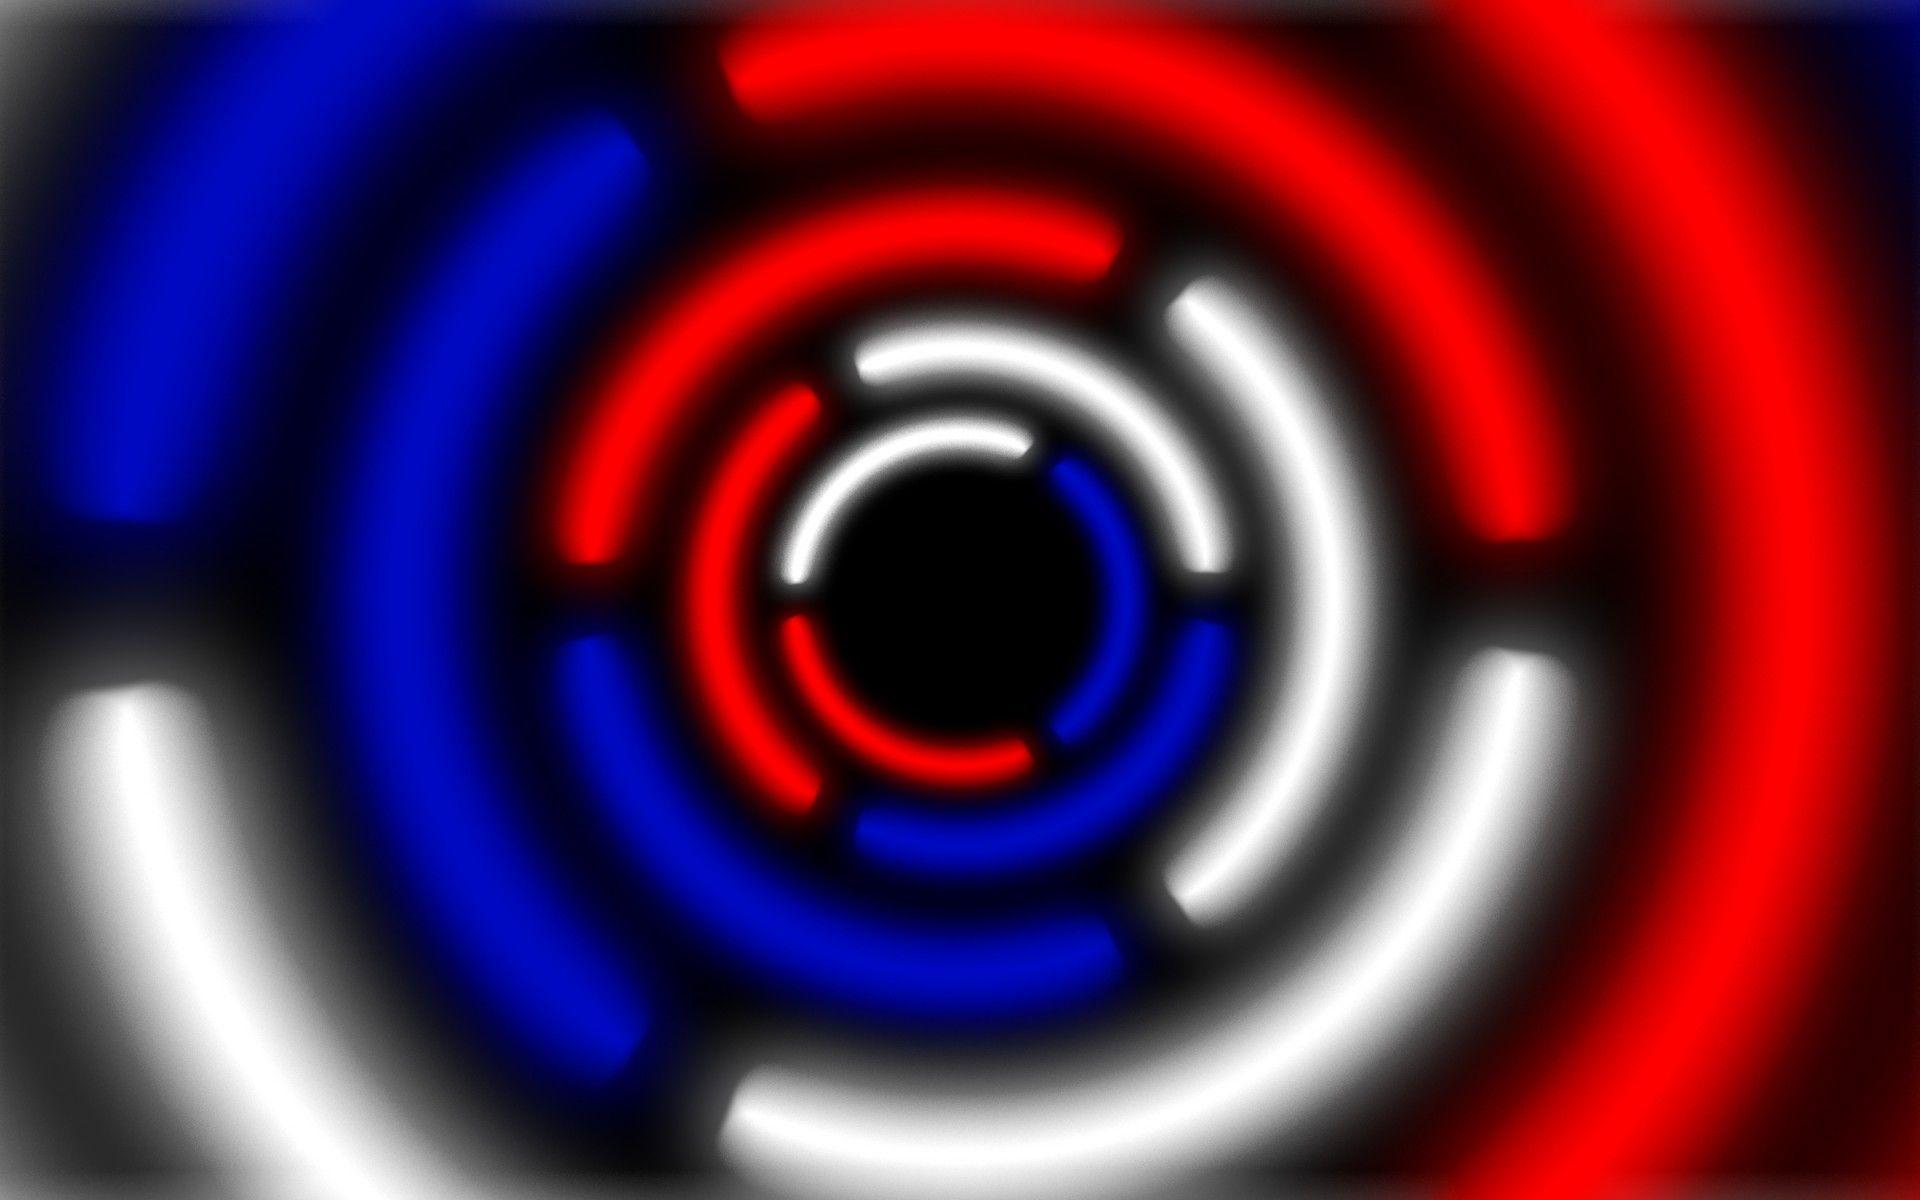 Red White and Blue Circular Logo - Circle krug Russia russia white blue red white blue red abstract